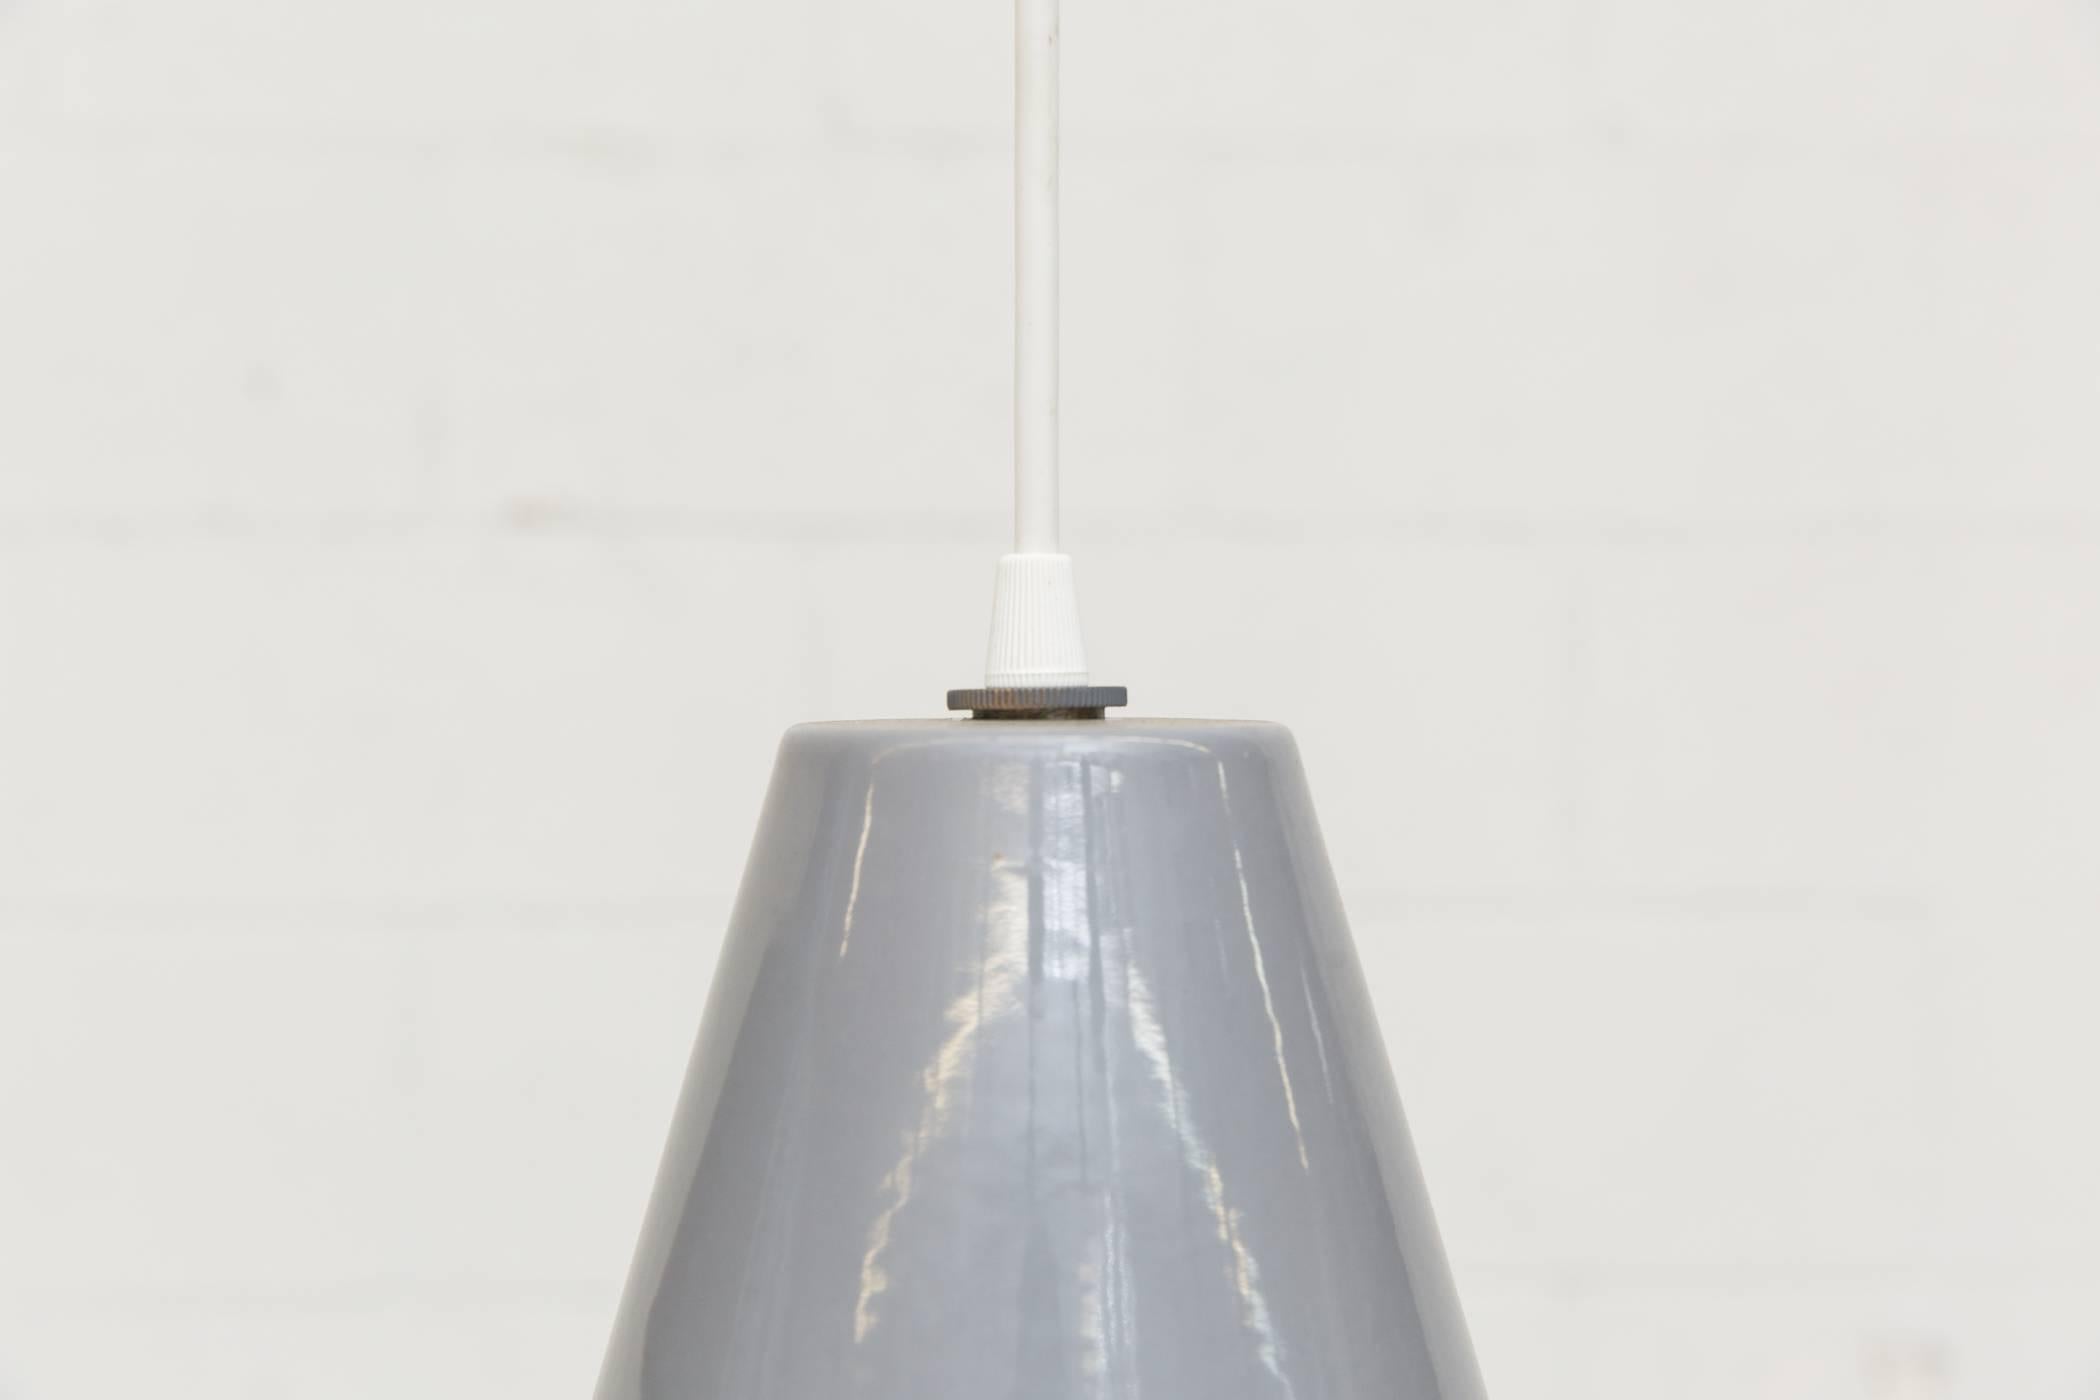 Mid-century, gris métal émaillé industriel Dutch factory lampes suspendues avec intérieur en métal émaillé blanc. Le design est similaire à la lampe suspendue 